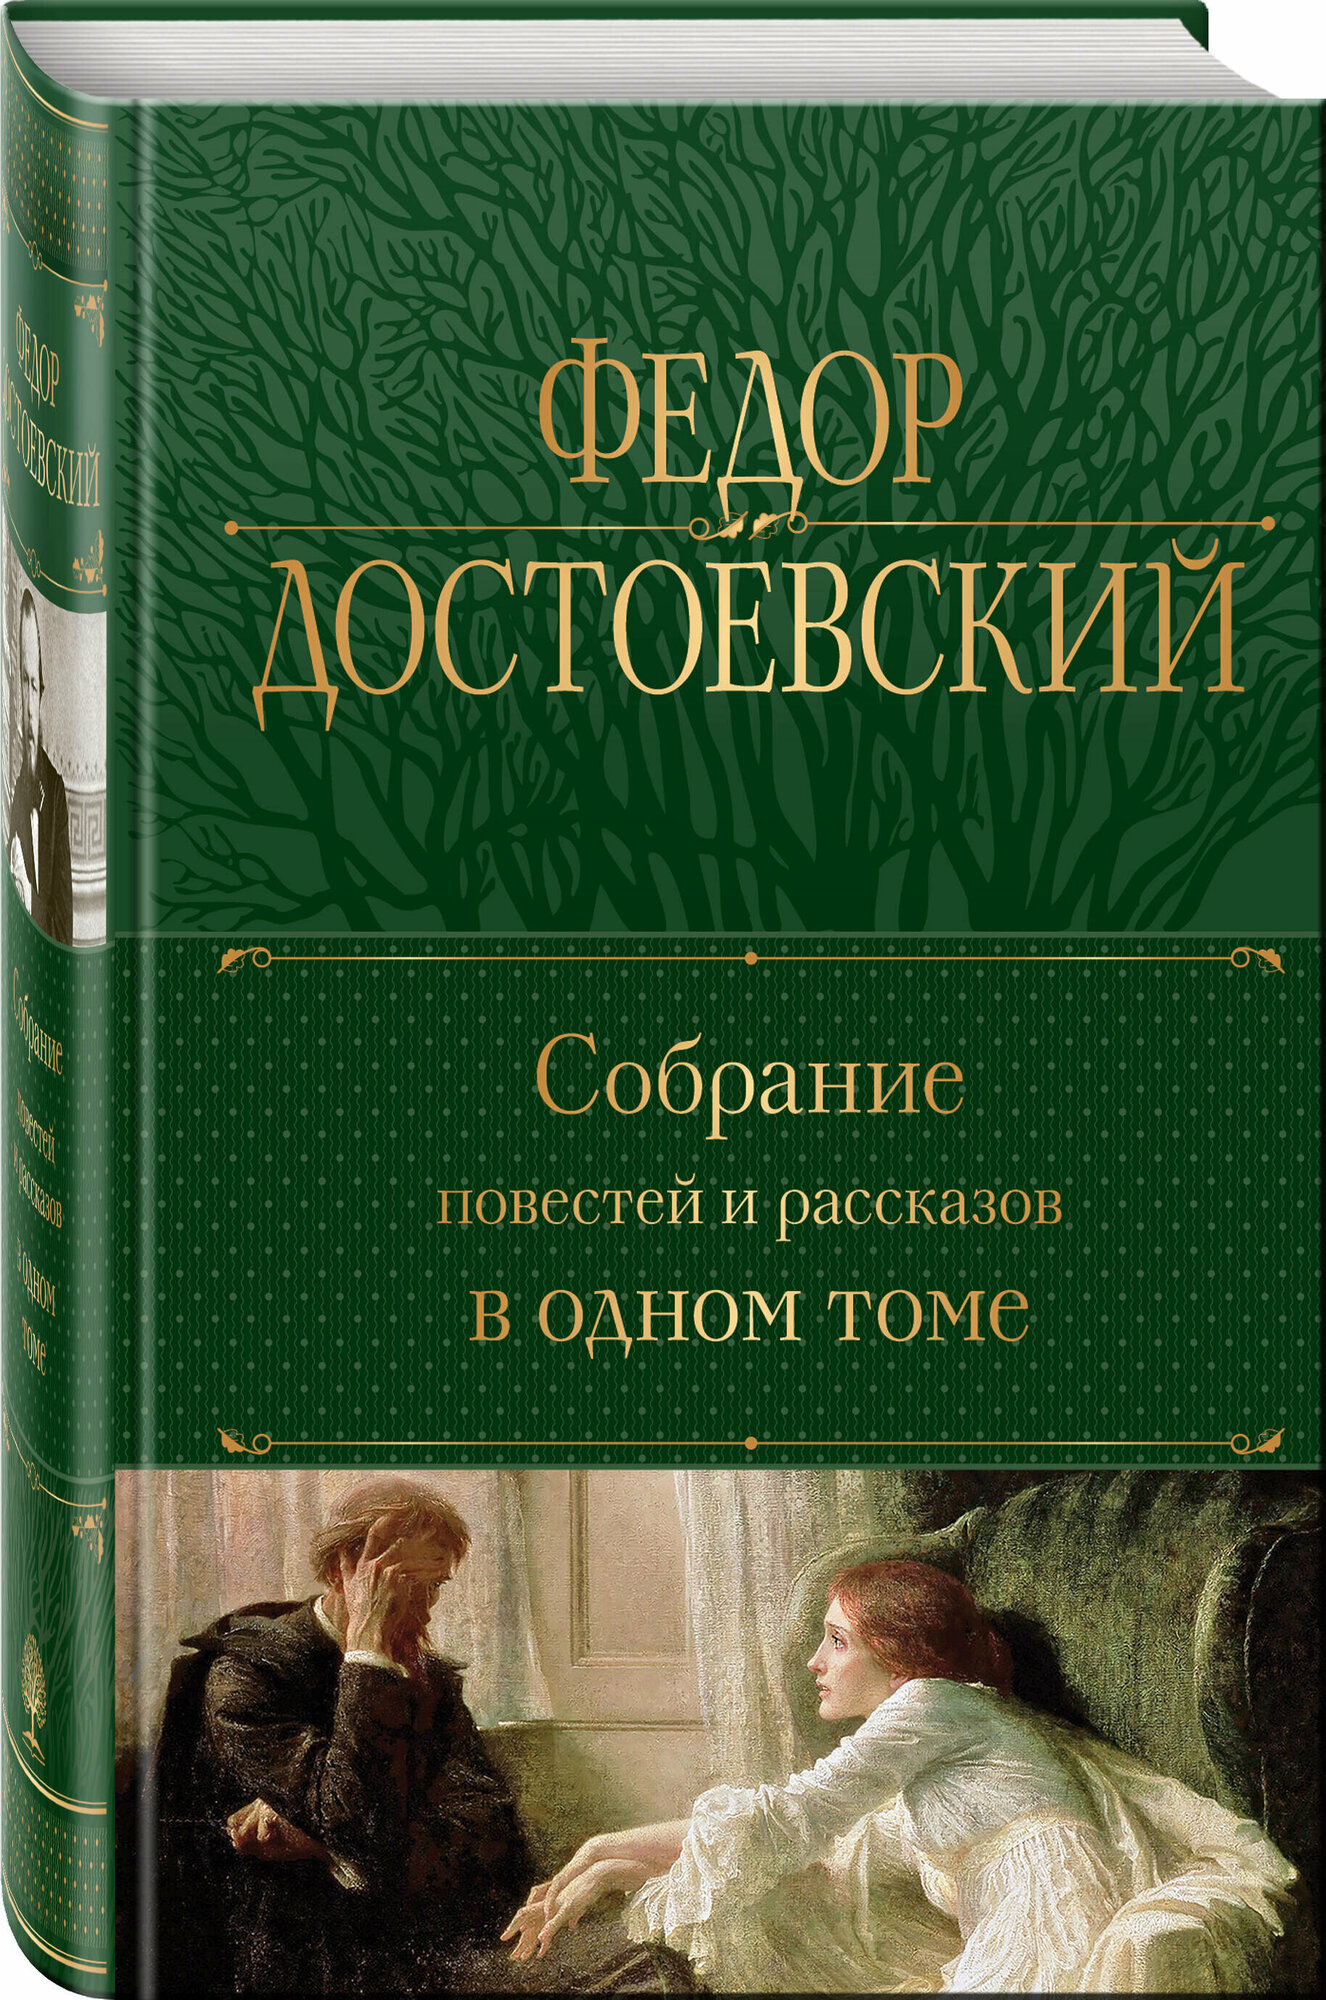 Достоевский Ф. М. Собрание повестей и рассказов в одном томе